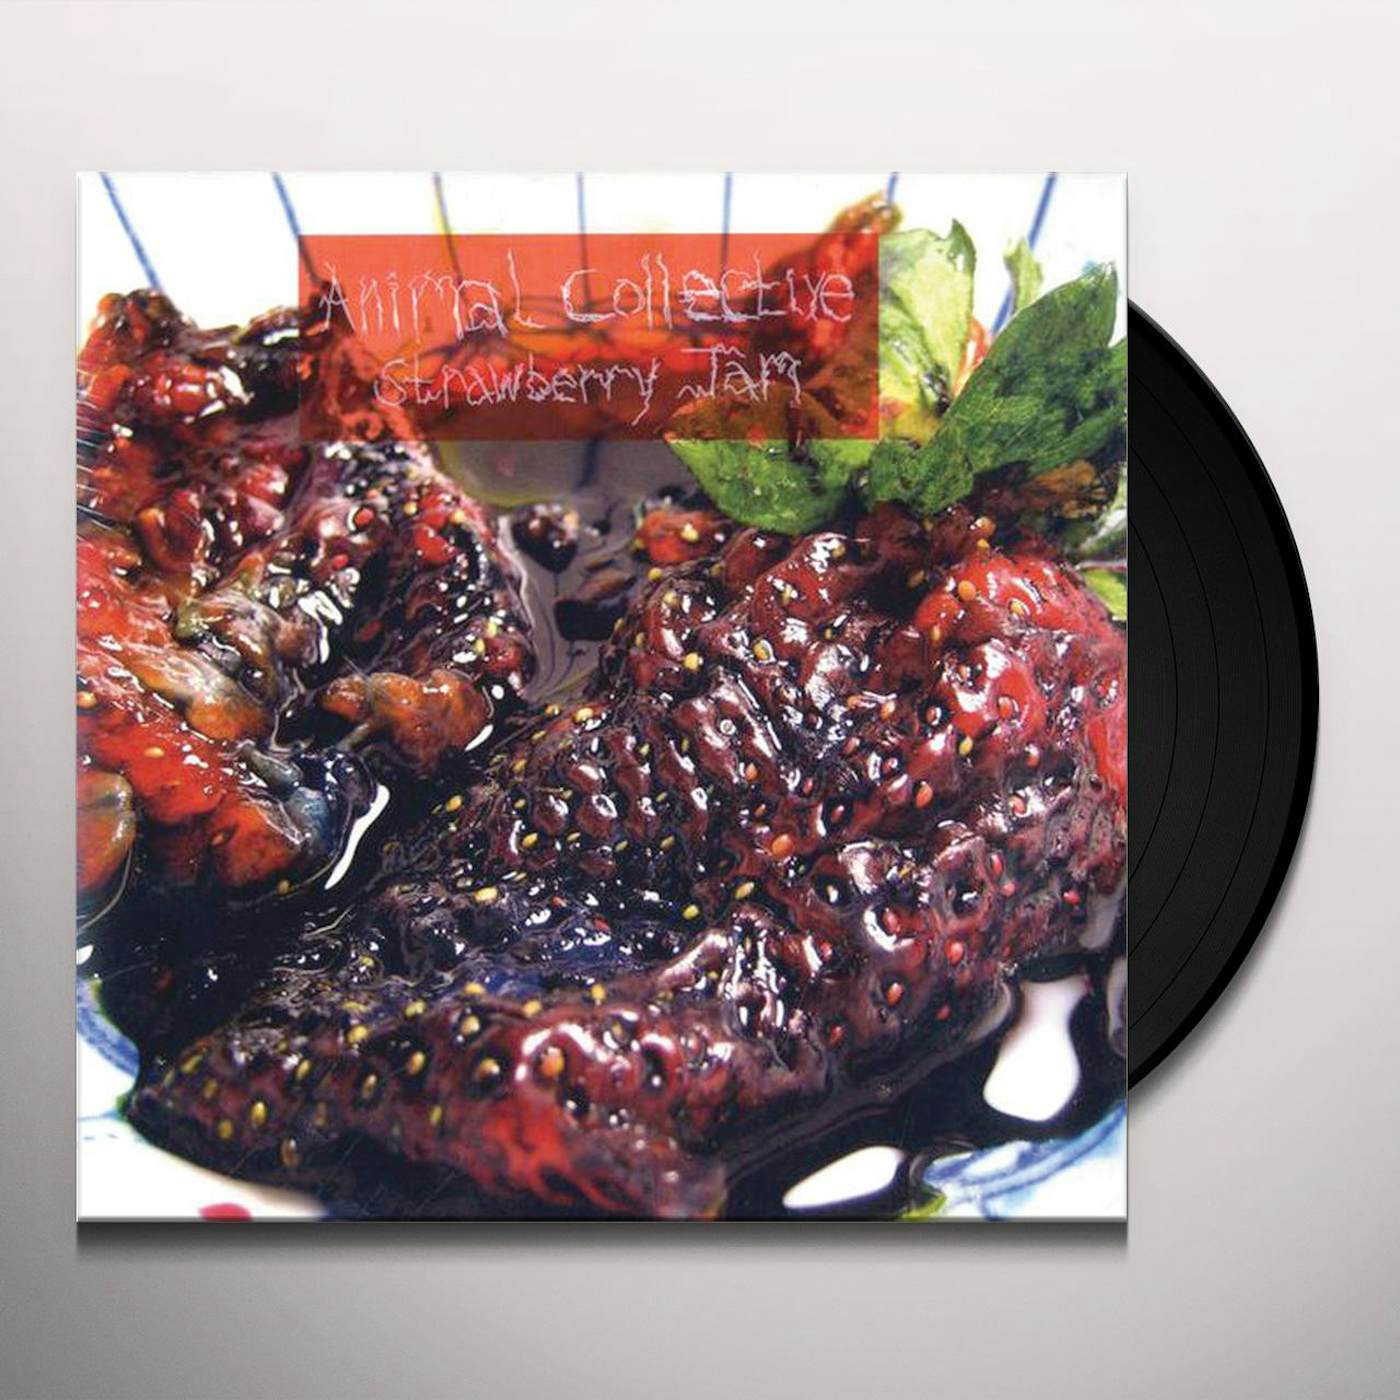 Animal Collective Strawberry Jam Vinyl Record